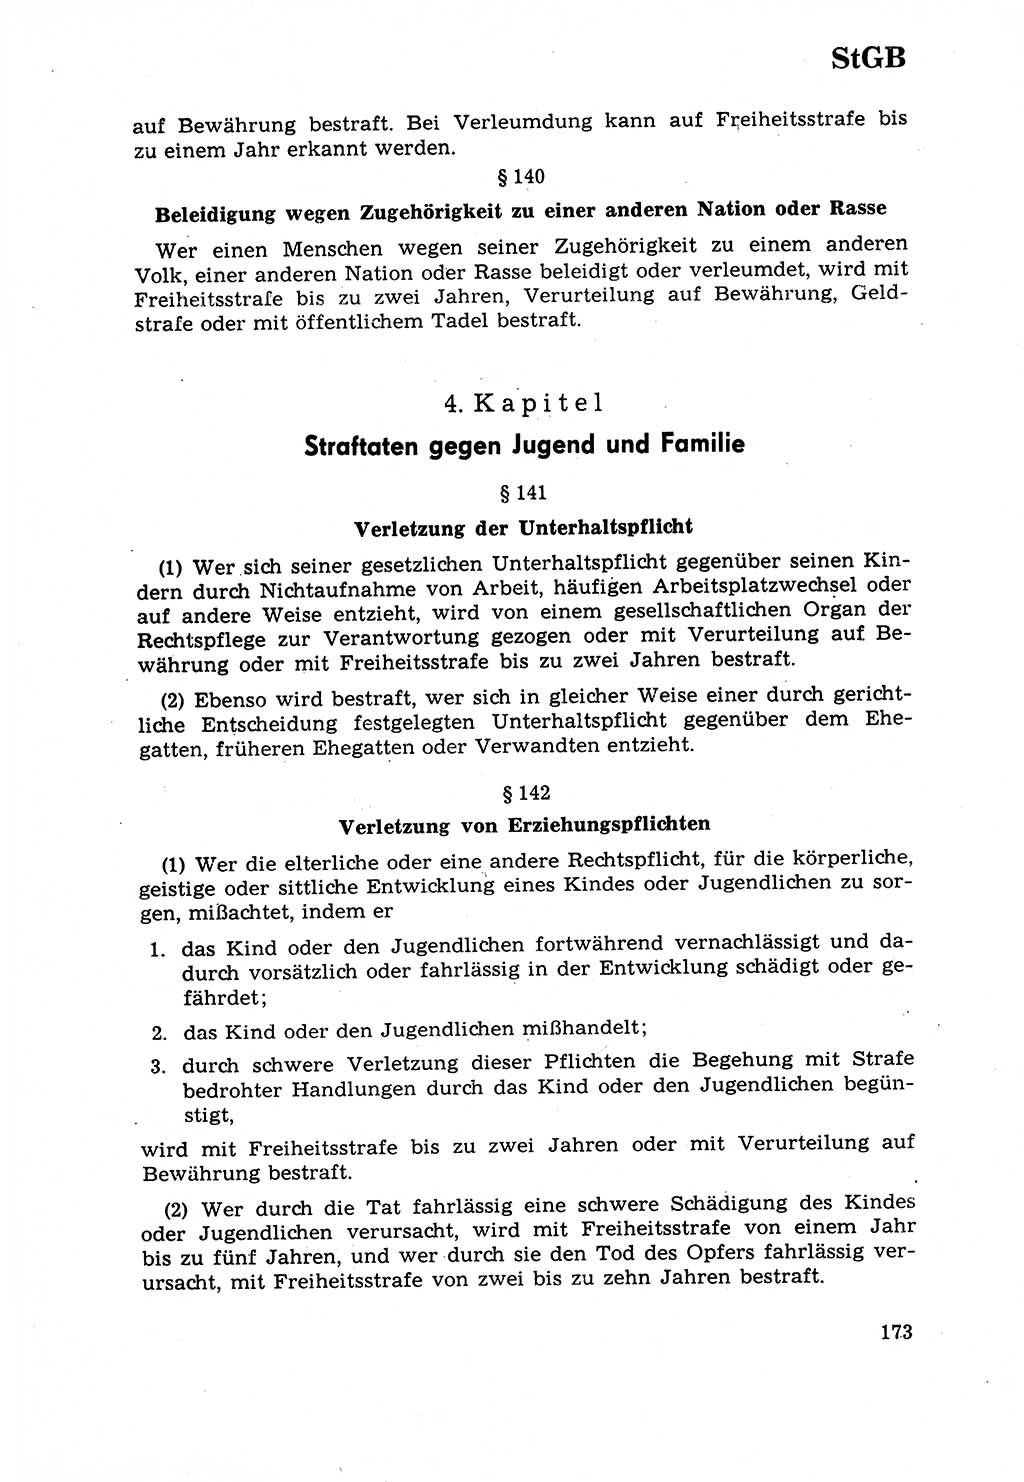 Strafrecht [Deutsche Demokratische Republik (DDR)] 1968, Seite 173 (Strafr. DDR 1968, S. 173)